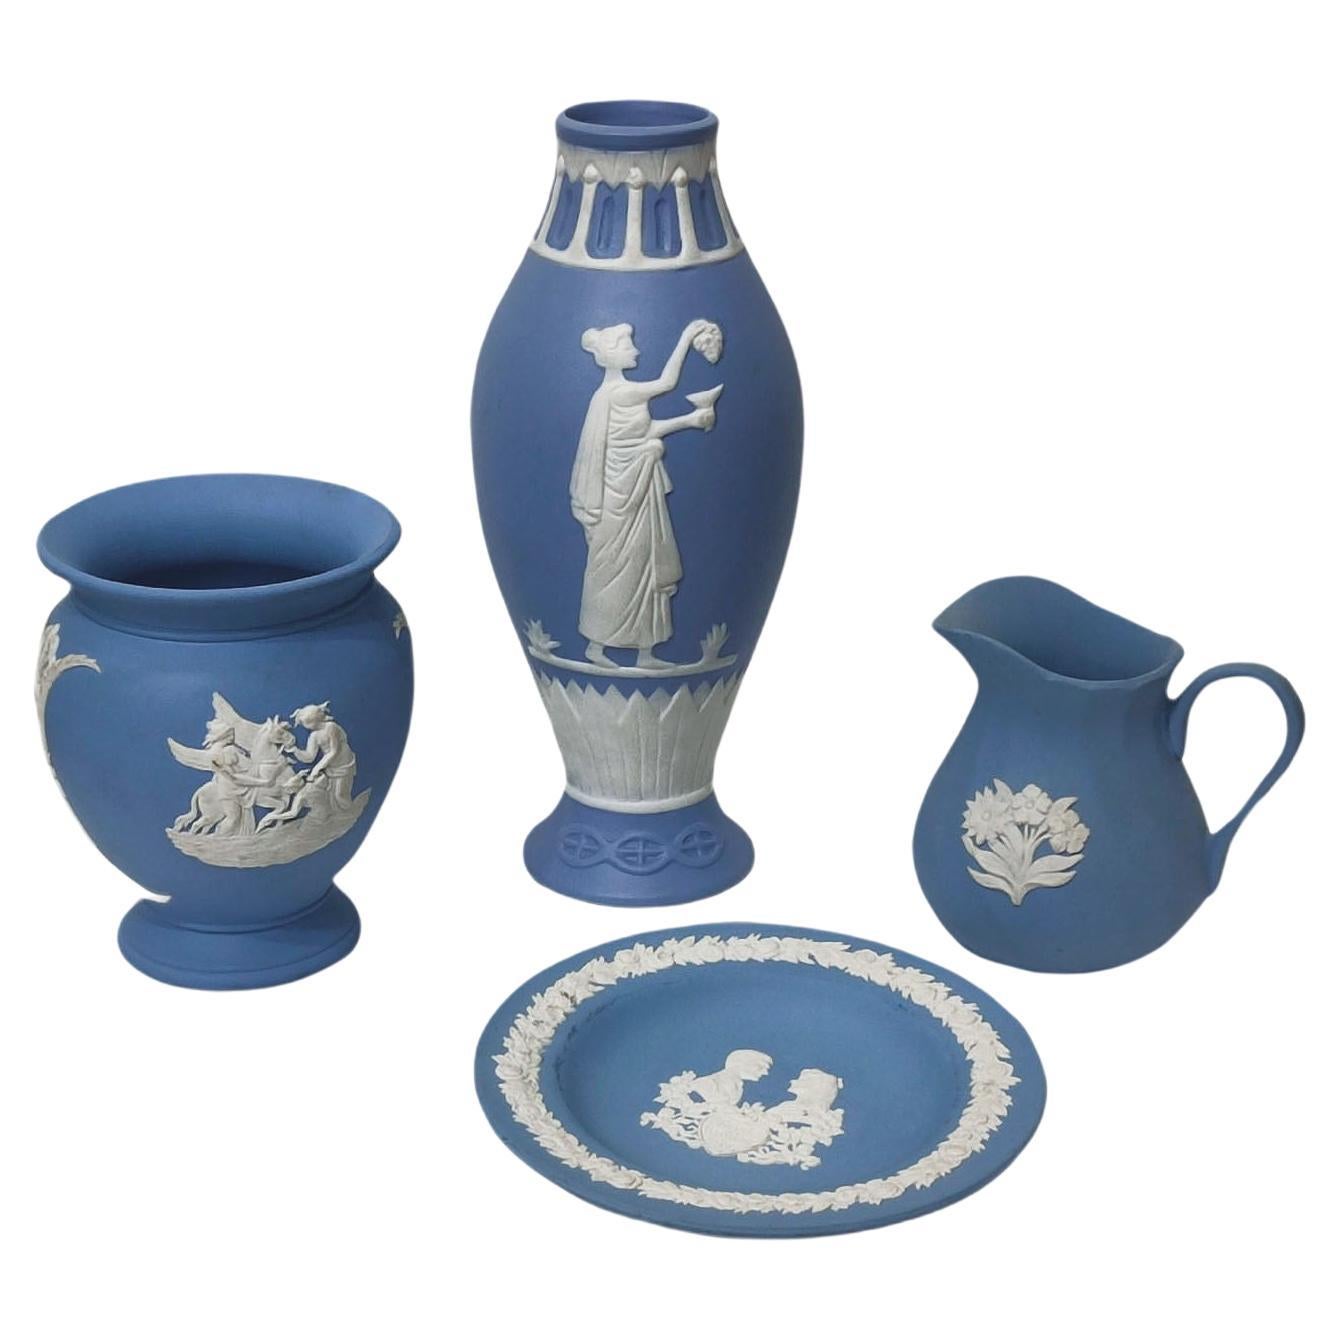 Vases Wedgwood en jaspe bleu représentant des scènes classiques, collection de 4 pièces, LIQUIDATION